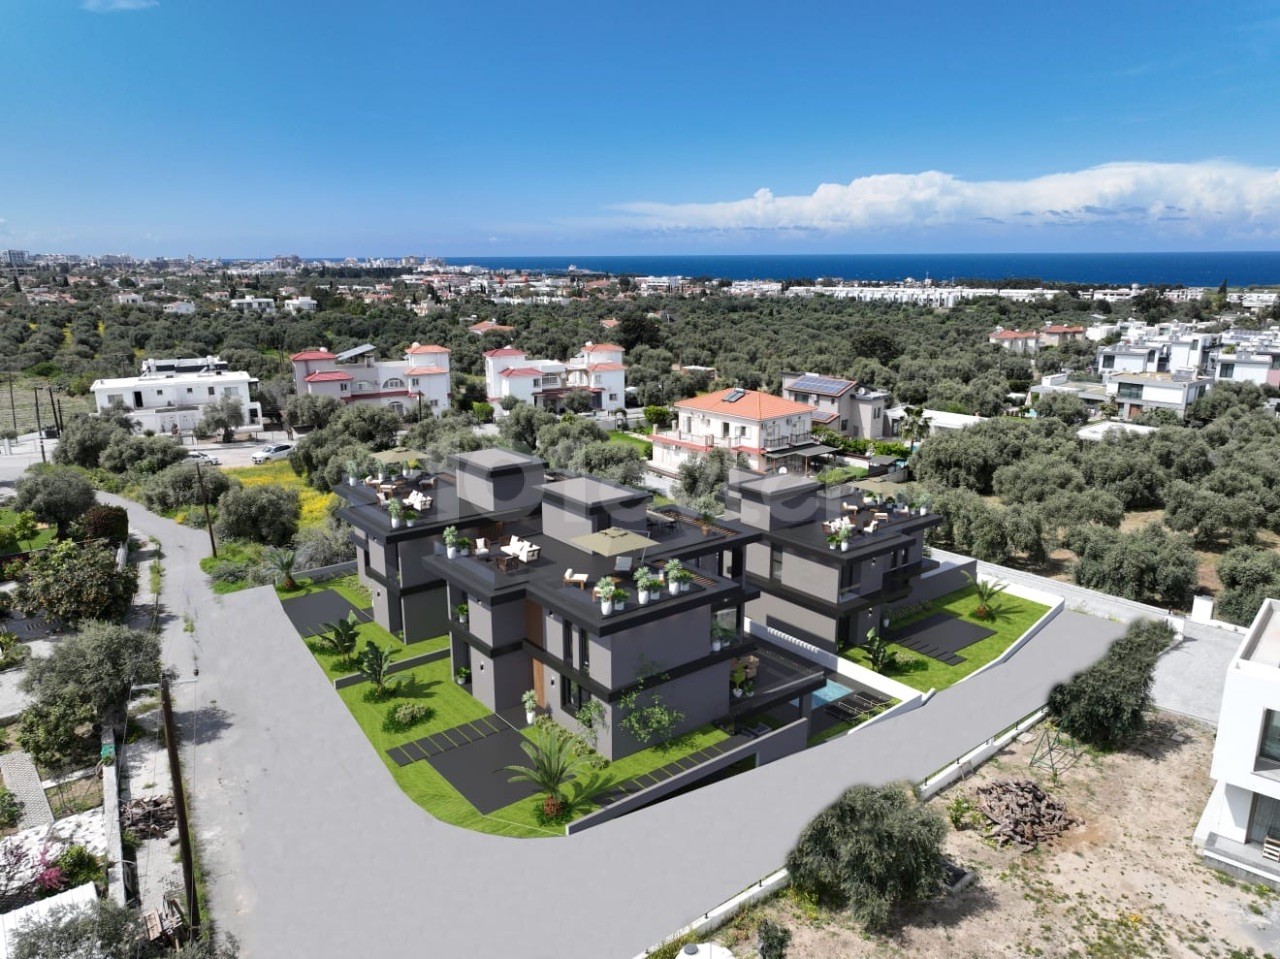 زمین 2000 متری برای فروش در Gİrne/Ozanköy با پروژه 3 ویلا با منظره کوه و دریا با مجوزهای پولی..0533 859 21 66